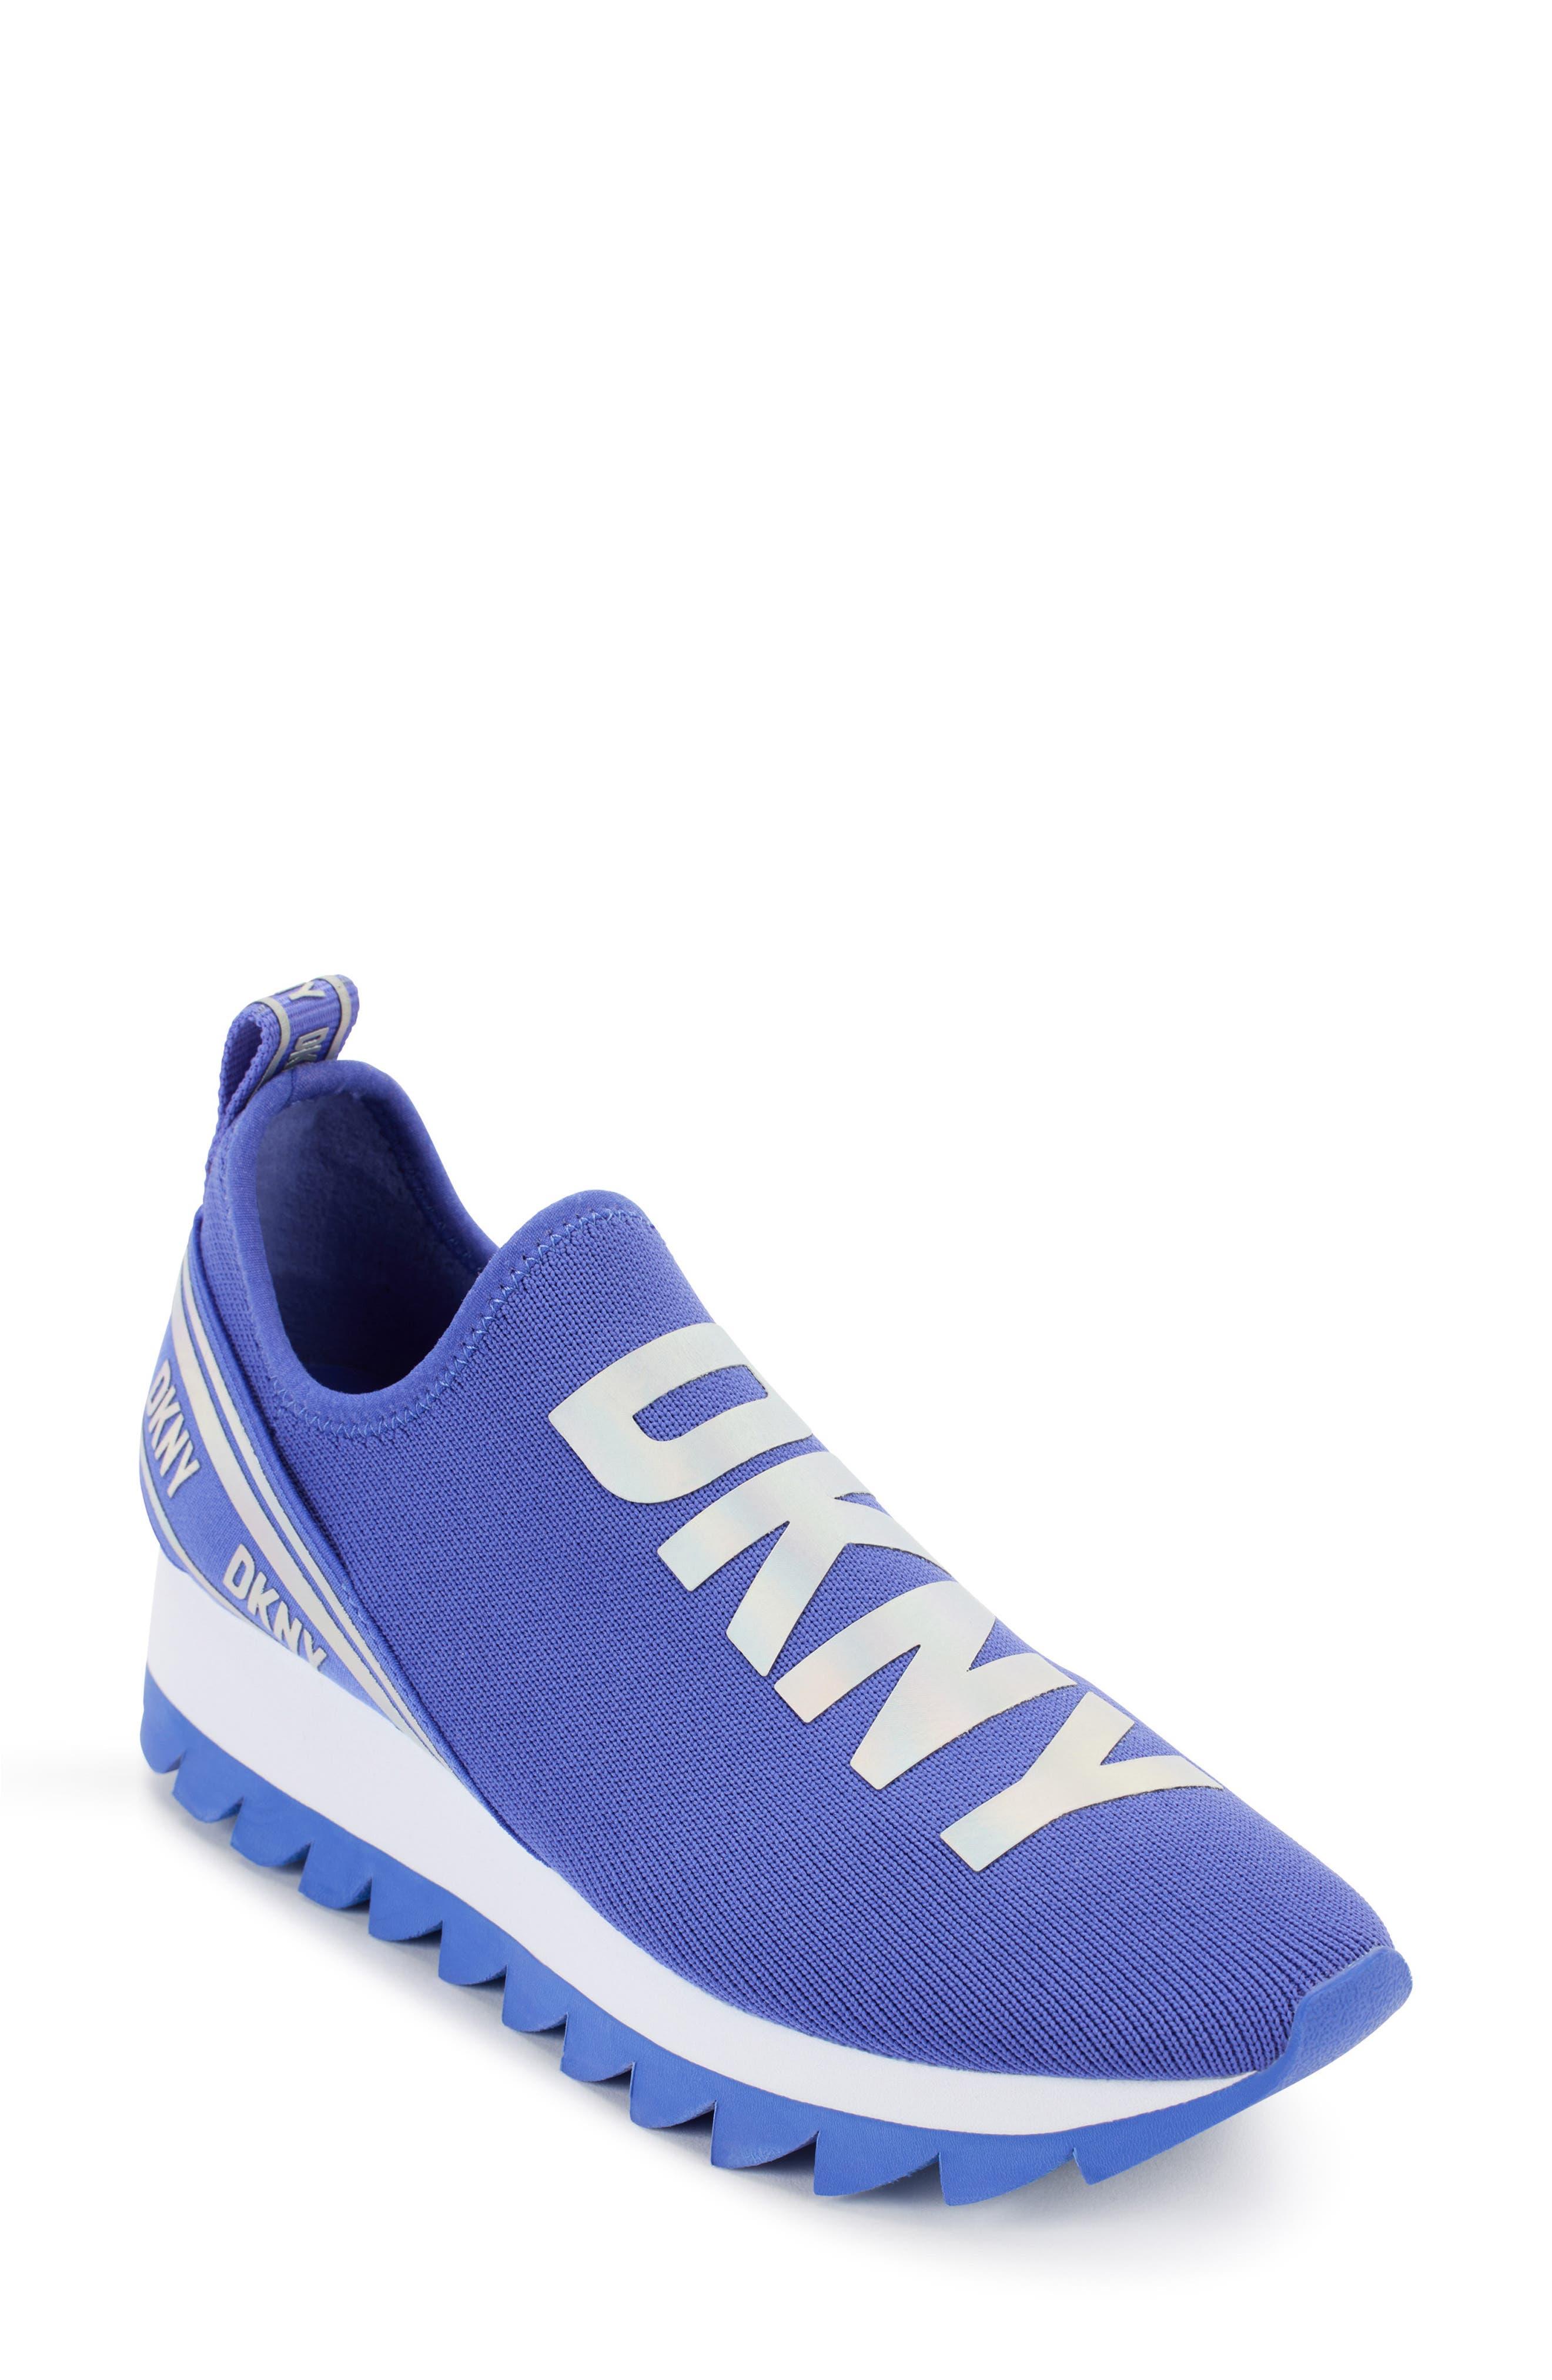 DKNY Abbi Knit Sneaker in Blue | Lyst